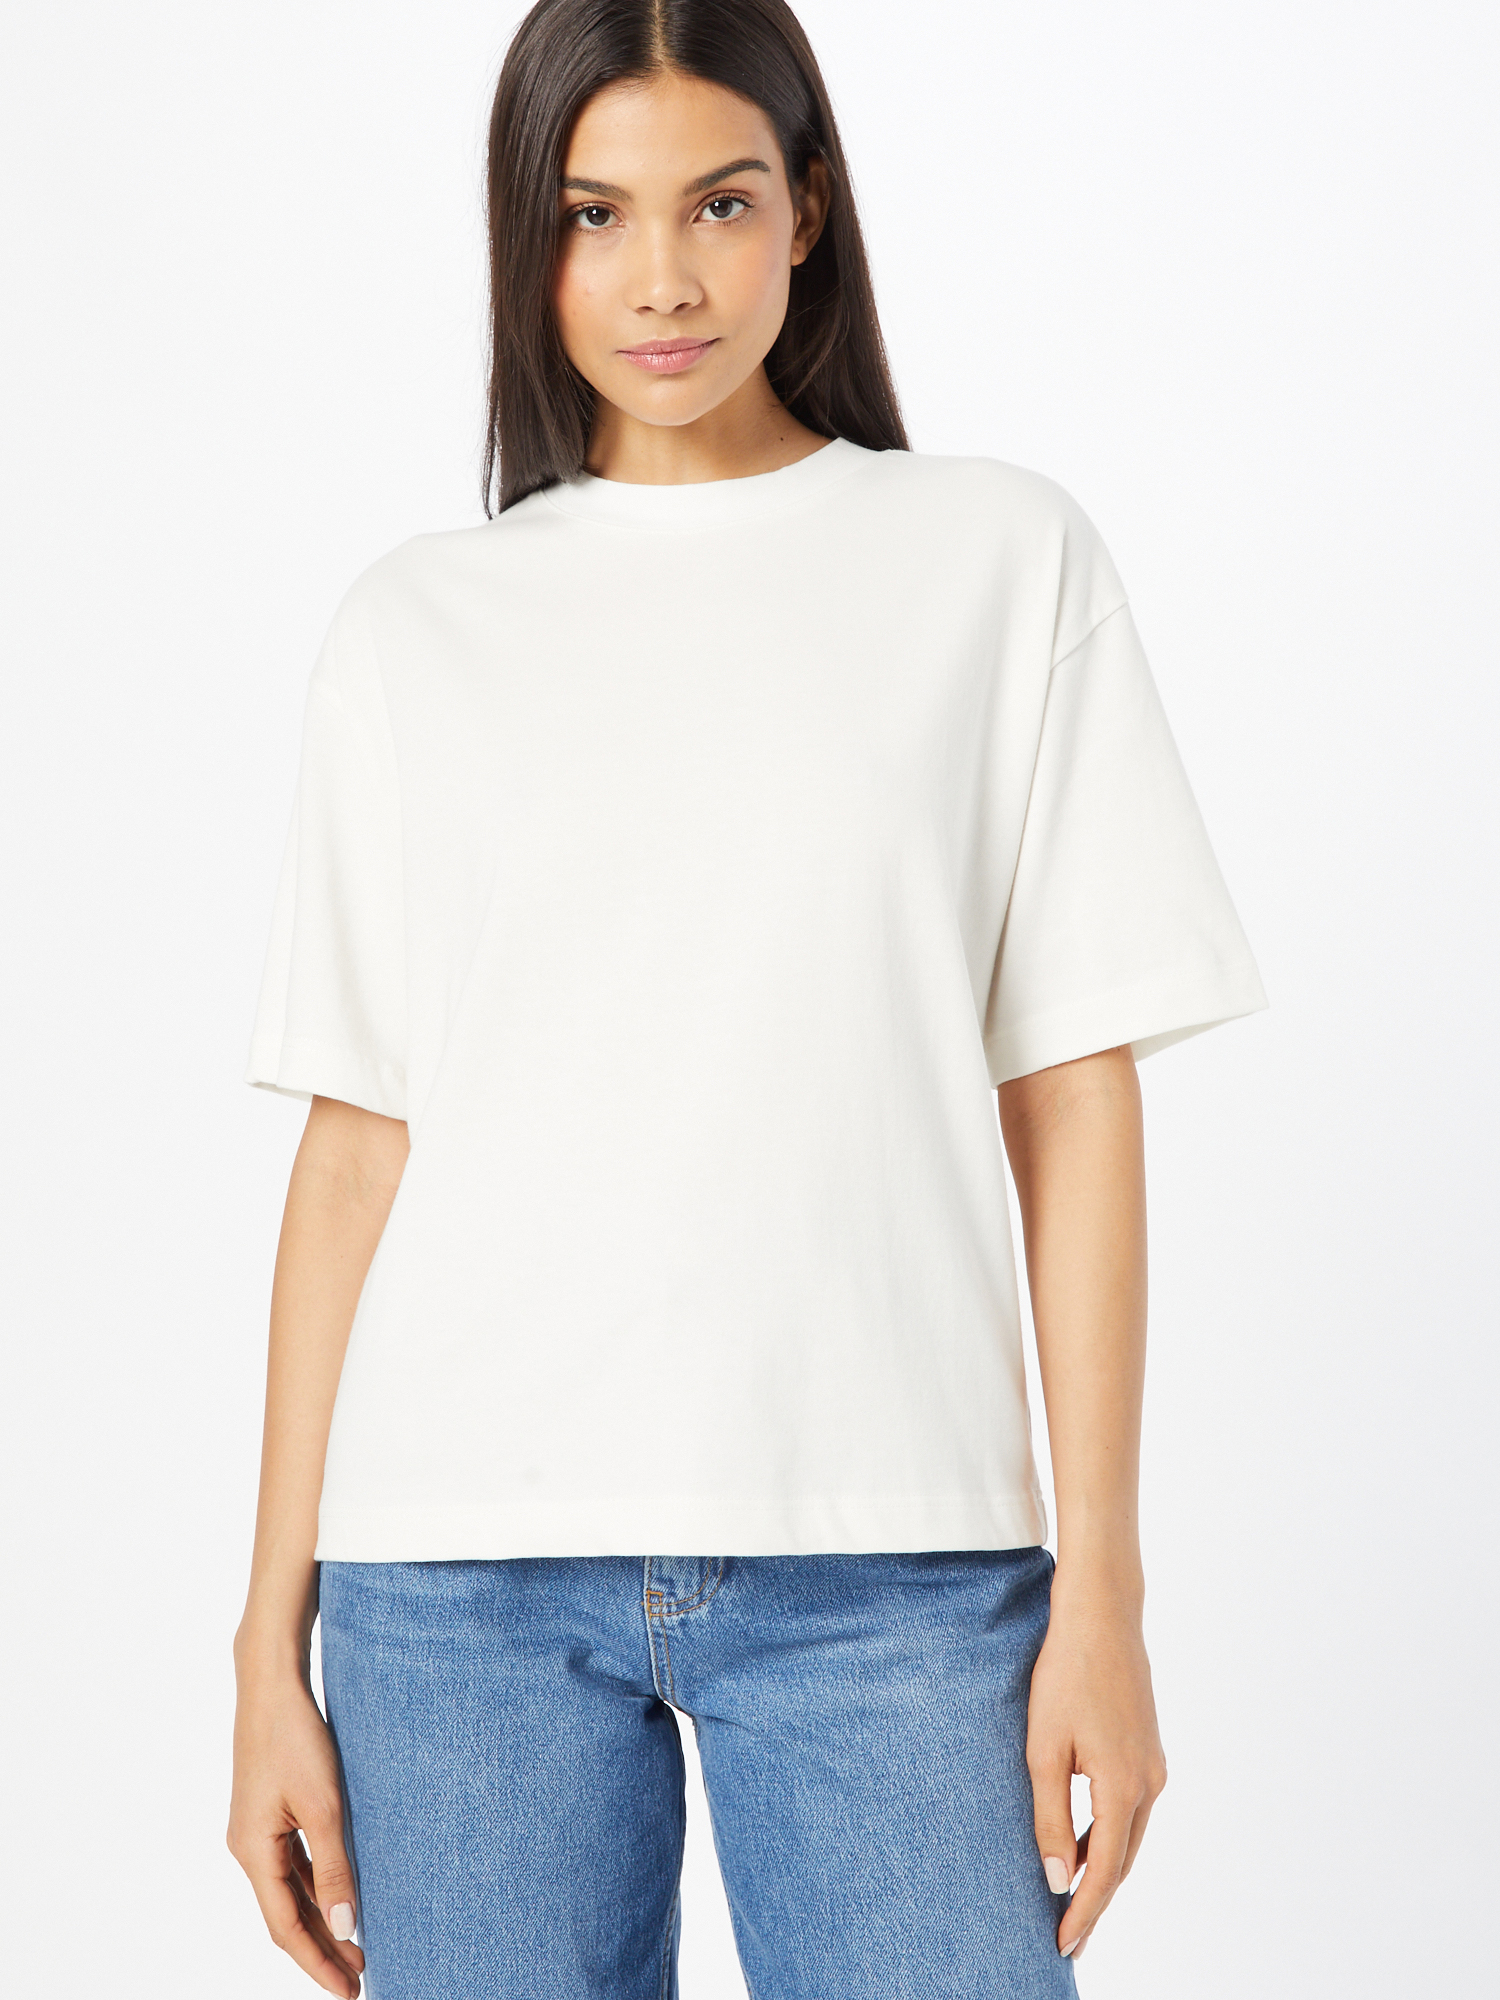 NeNEx Odzież LENI KLUM x Koszulka Heather w kolorze Białym 